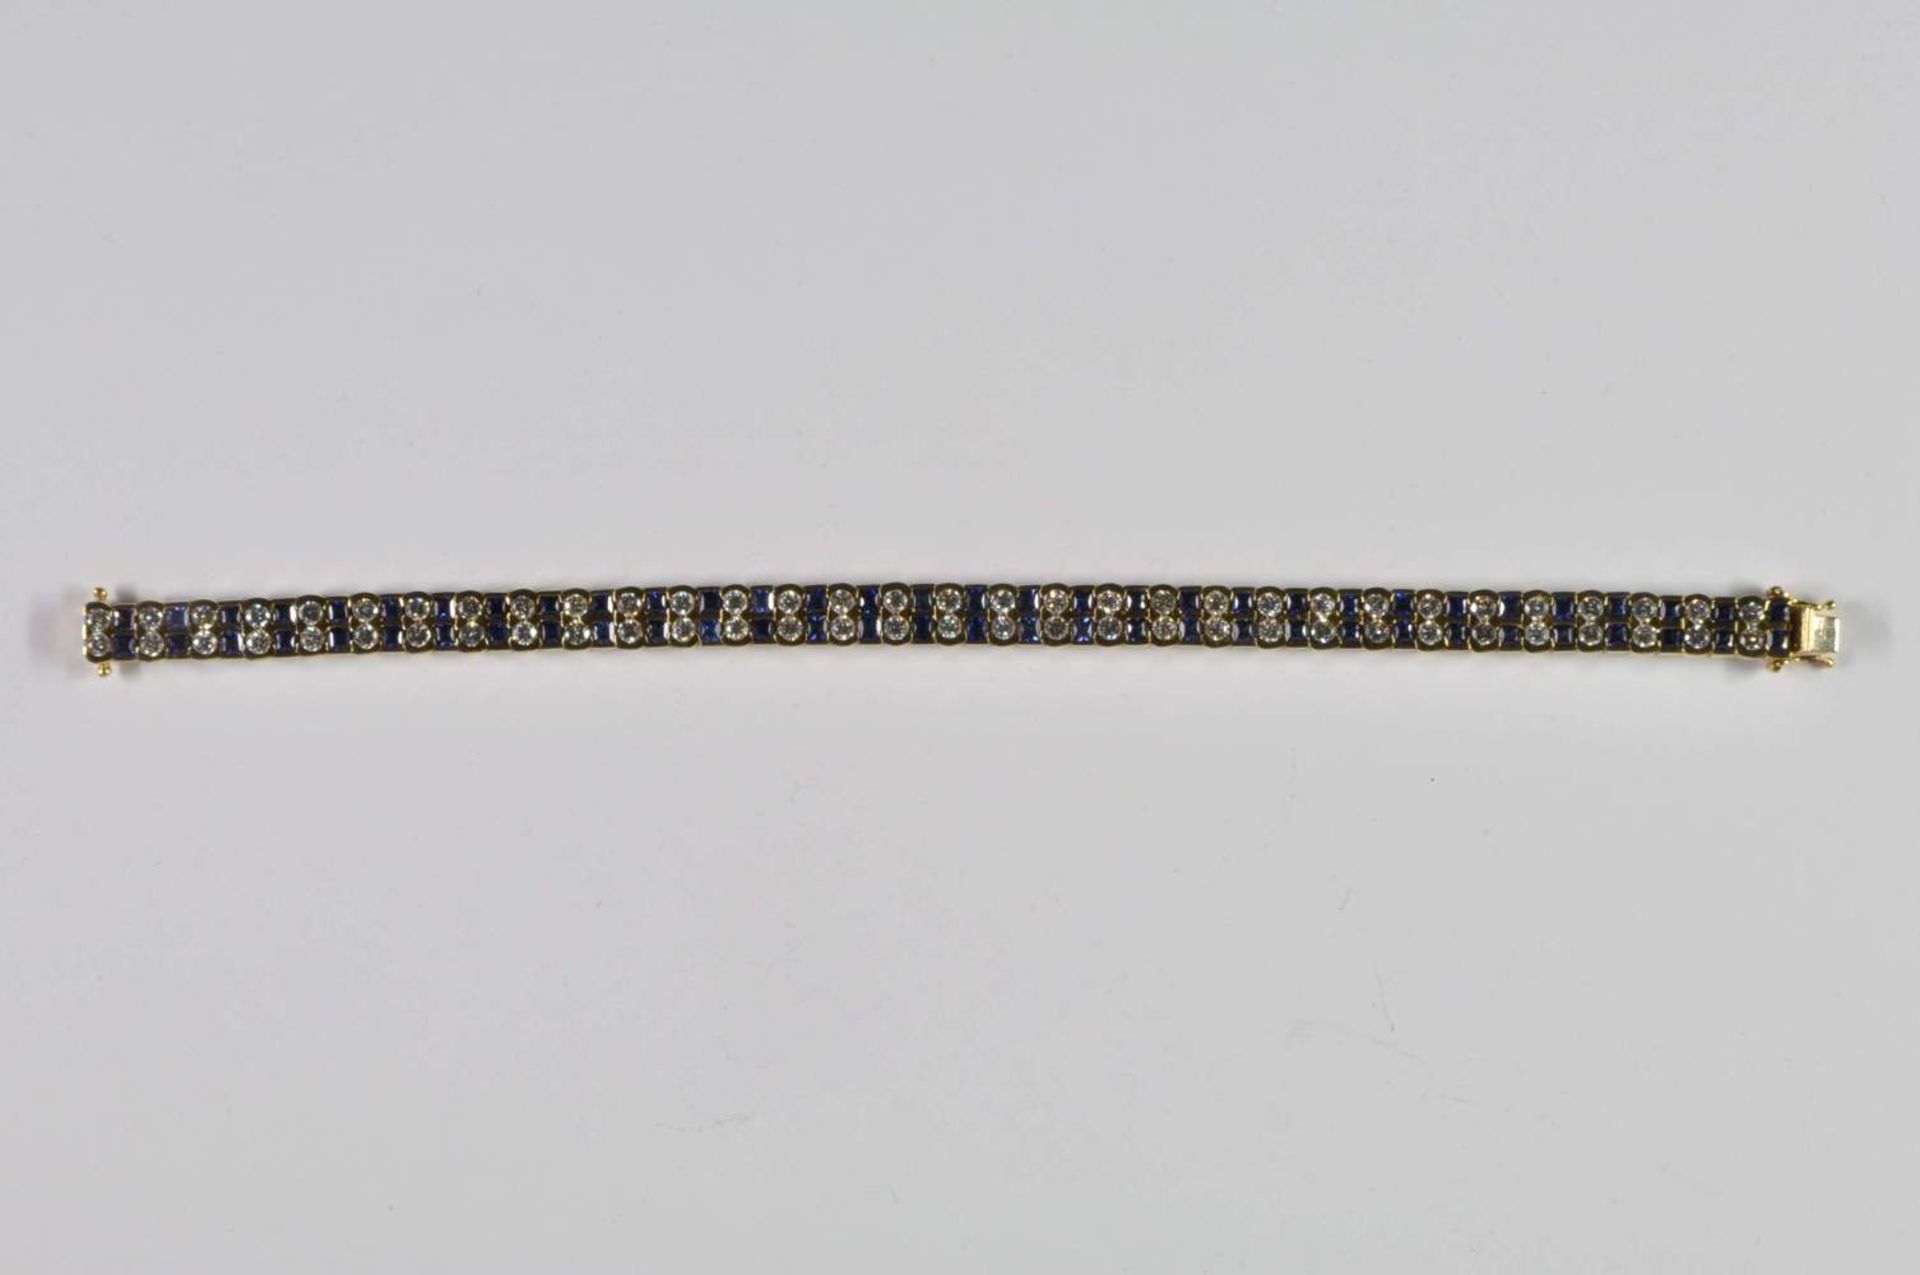 Saphir-Brillant-Armband, 750 Gelbgold, Punze, 66 Brillanten von zus. ca. 3,2ct, 64 Saphiren von zus. - Bild 6 aus 20